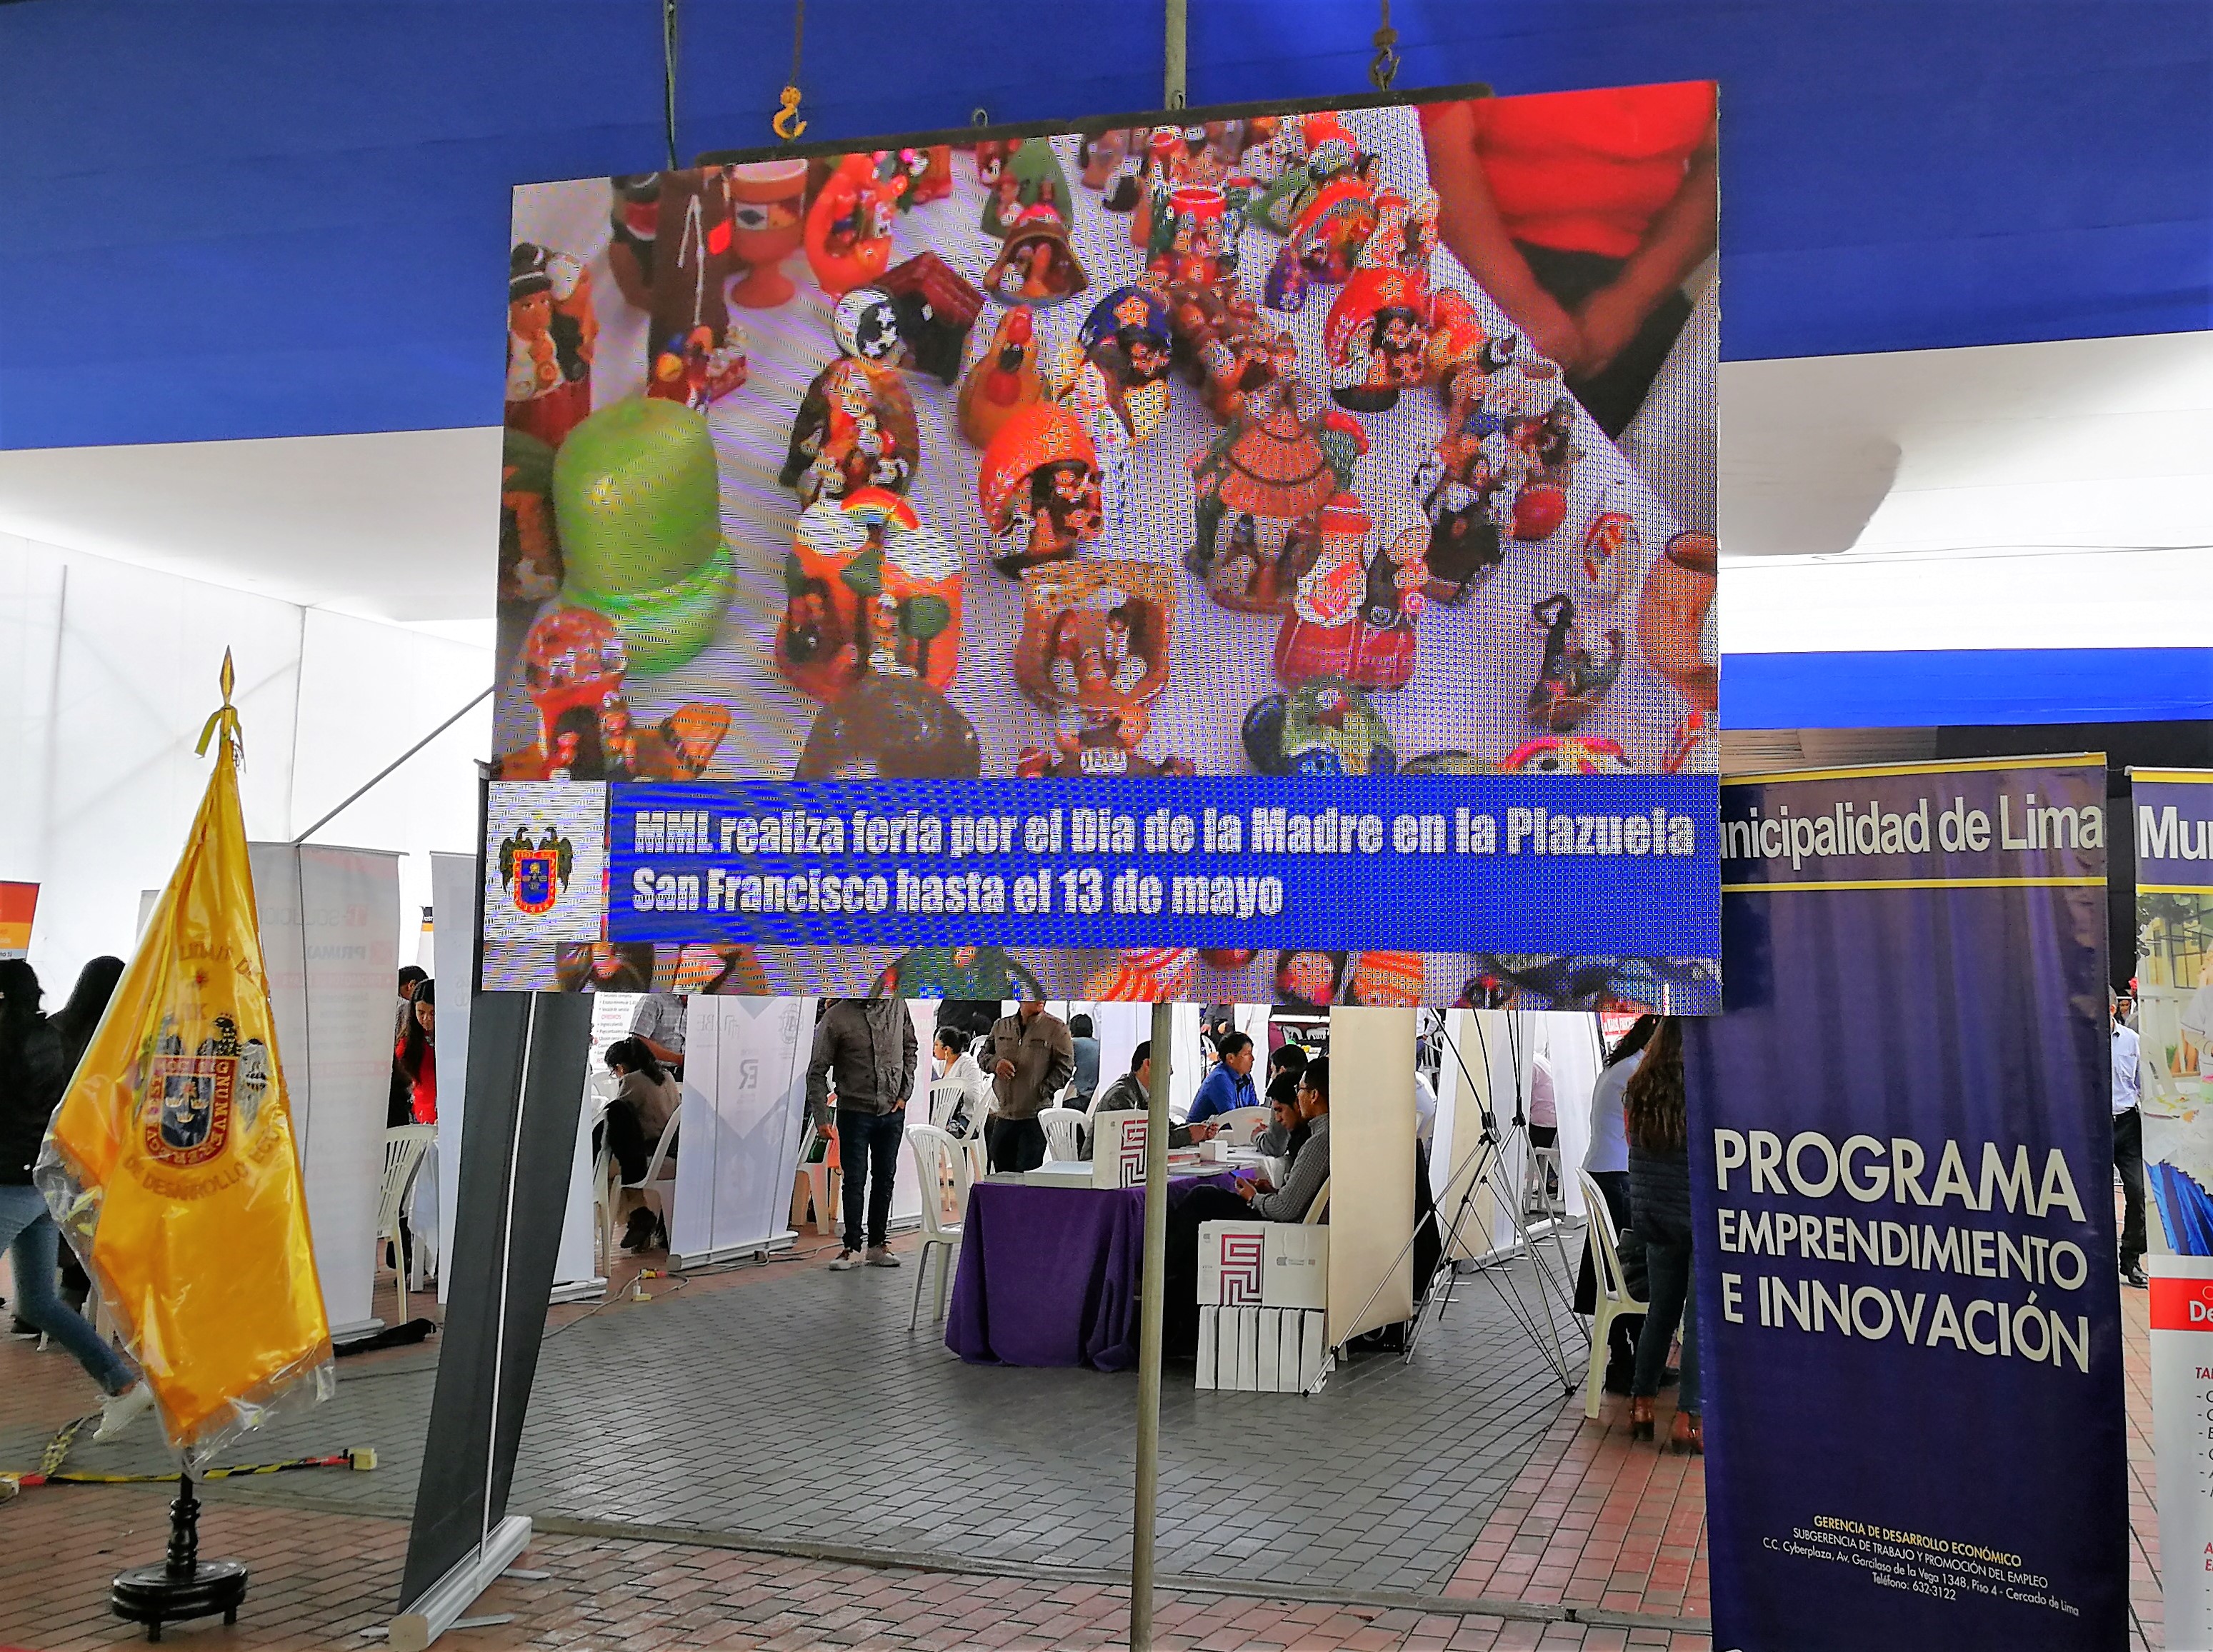 Semana de emprendimiento & innovación Municipalidad de Lima